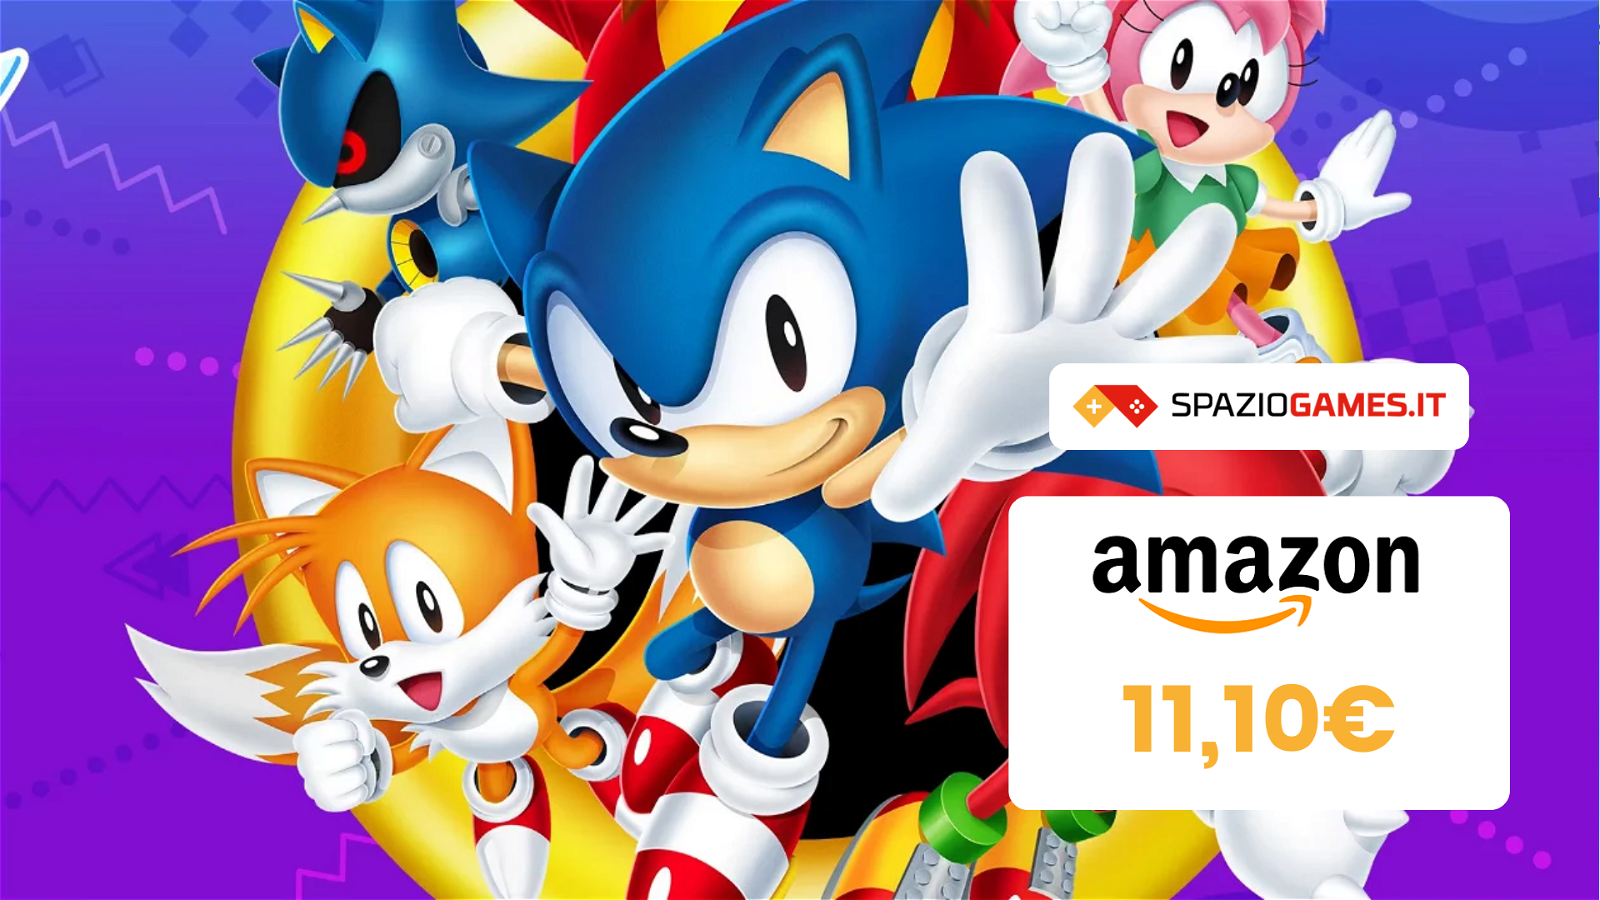 Sonic Origins Plus per Xbox oggi costa SOLO 11,10€! (-73%)